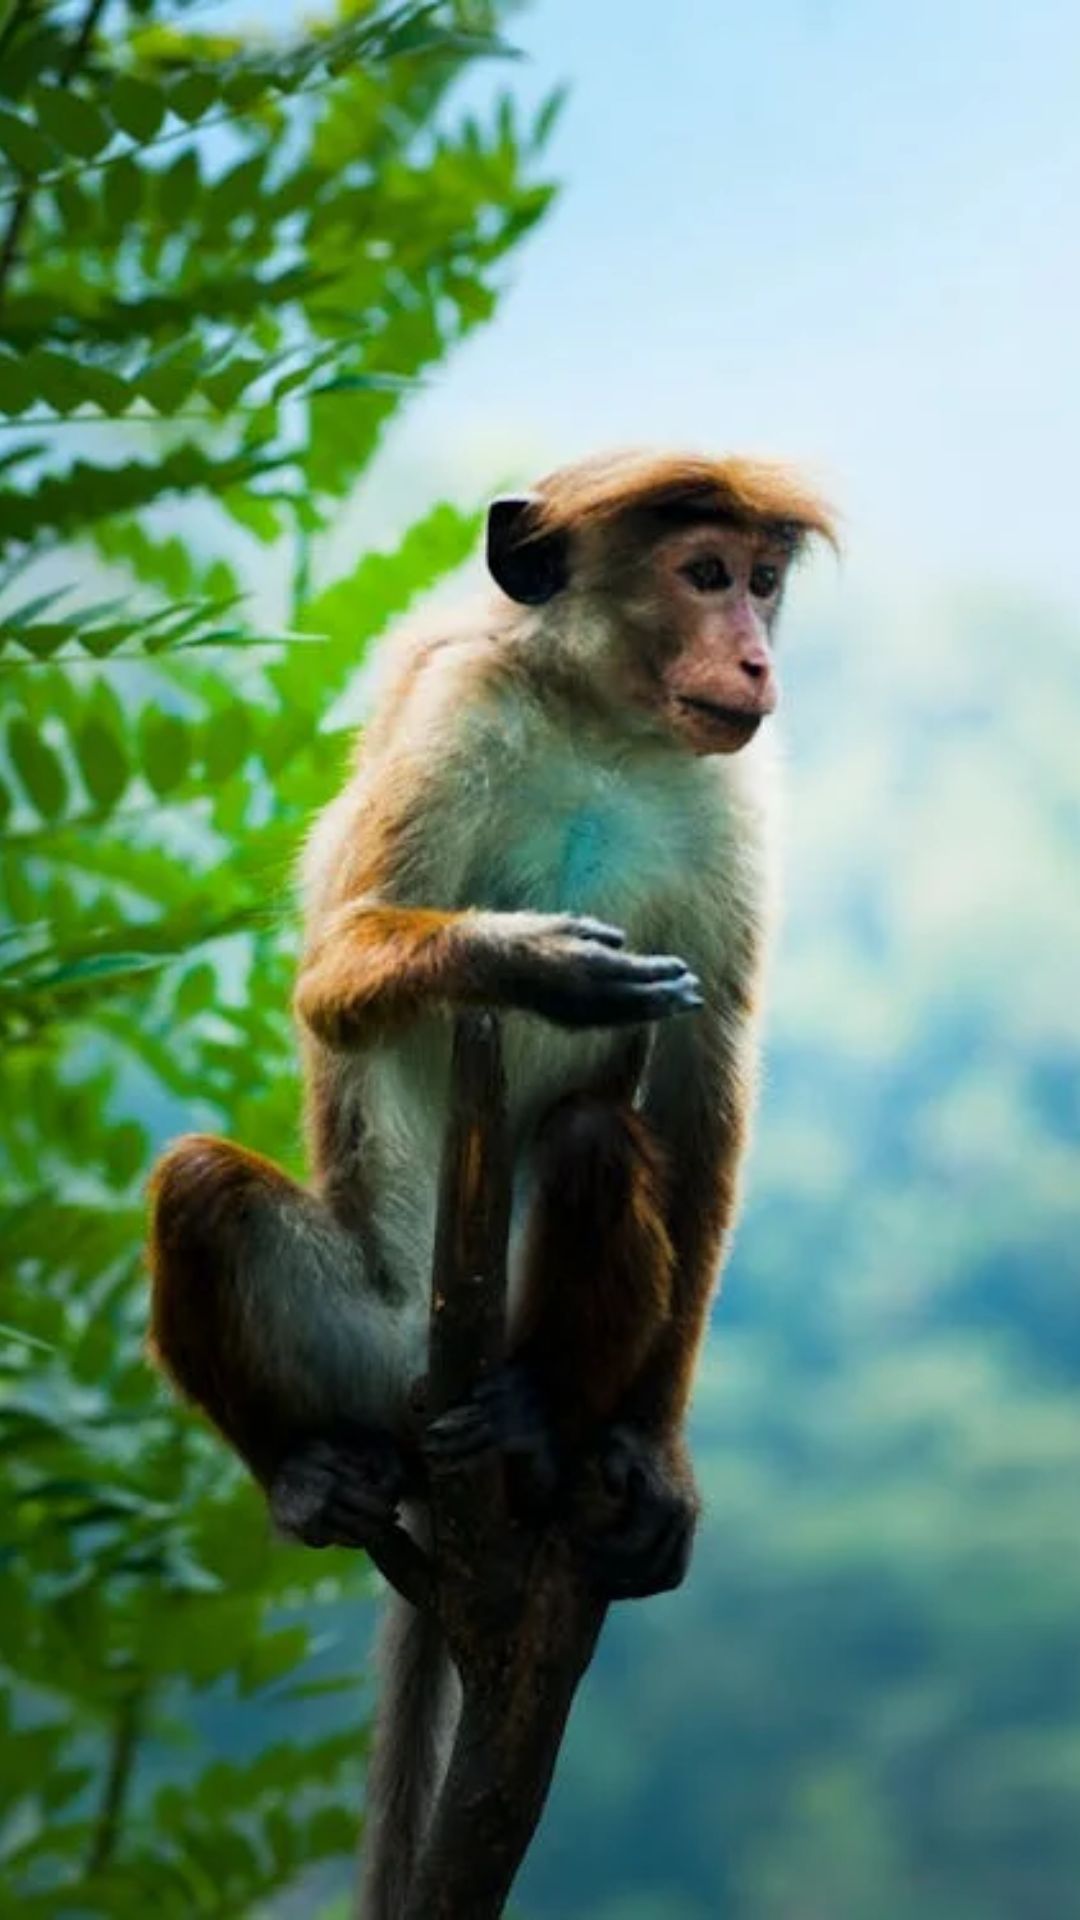 बंदर क्यों नहीं जानता अदरक का स्वाद; मुहावरा तो सुना होगा लेकिन कभी सोचा क्या? 